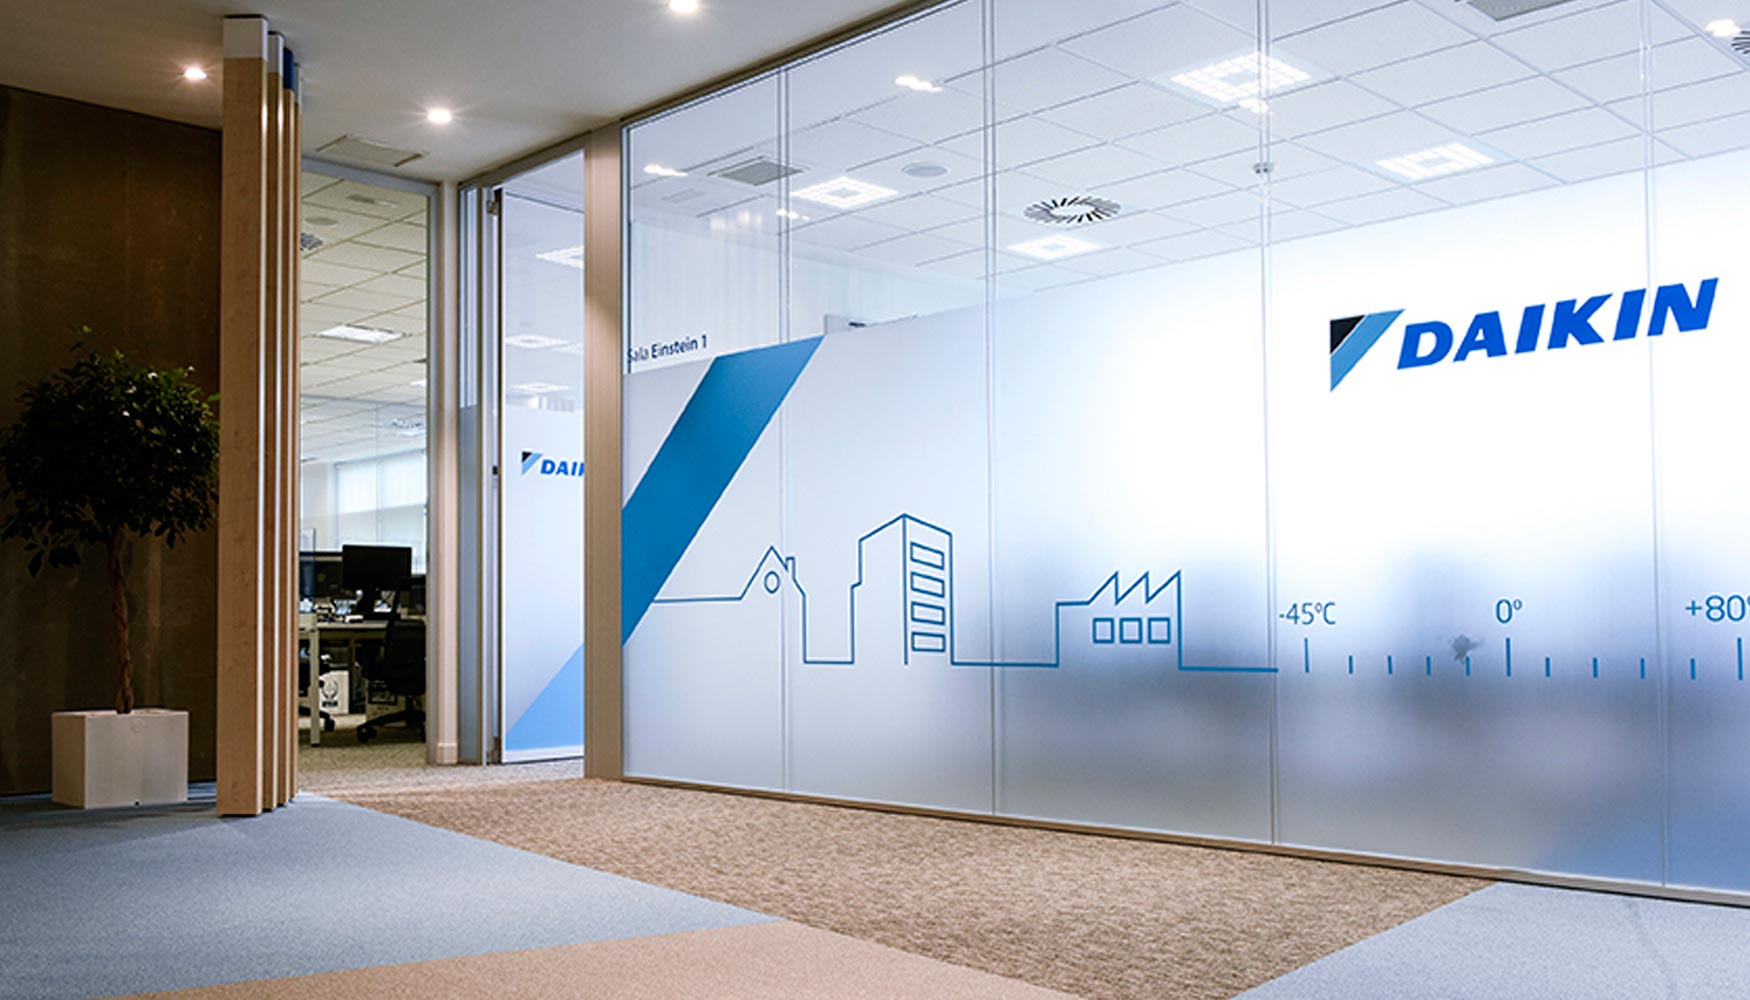 Daikin ha trasladado su sede central a unas nuevas oficinas ubicadas en el Parque Empresarial Alvento